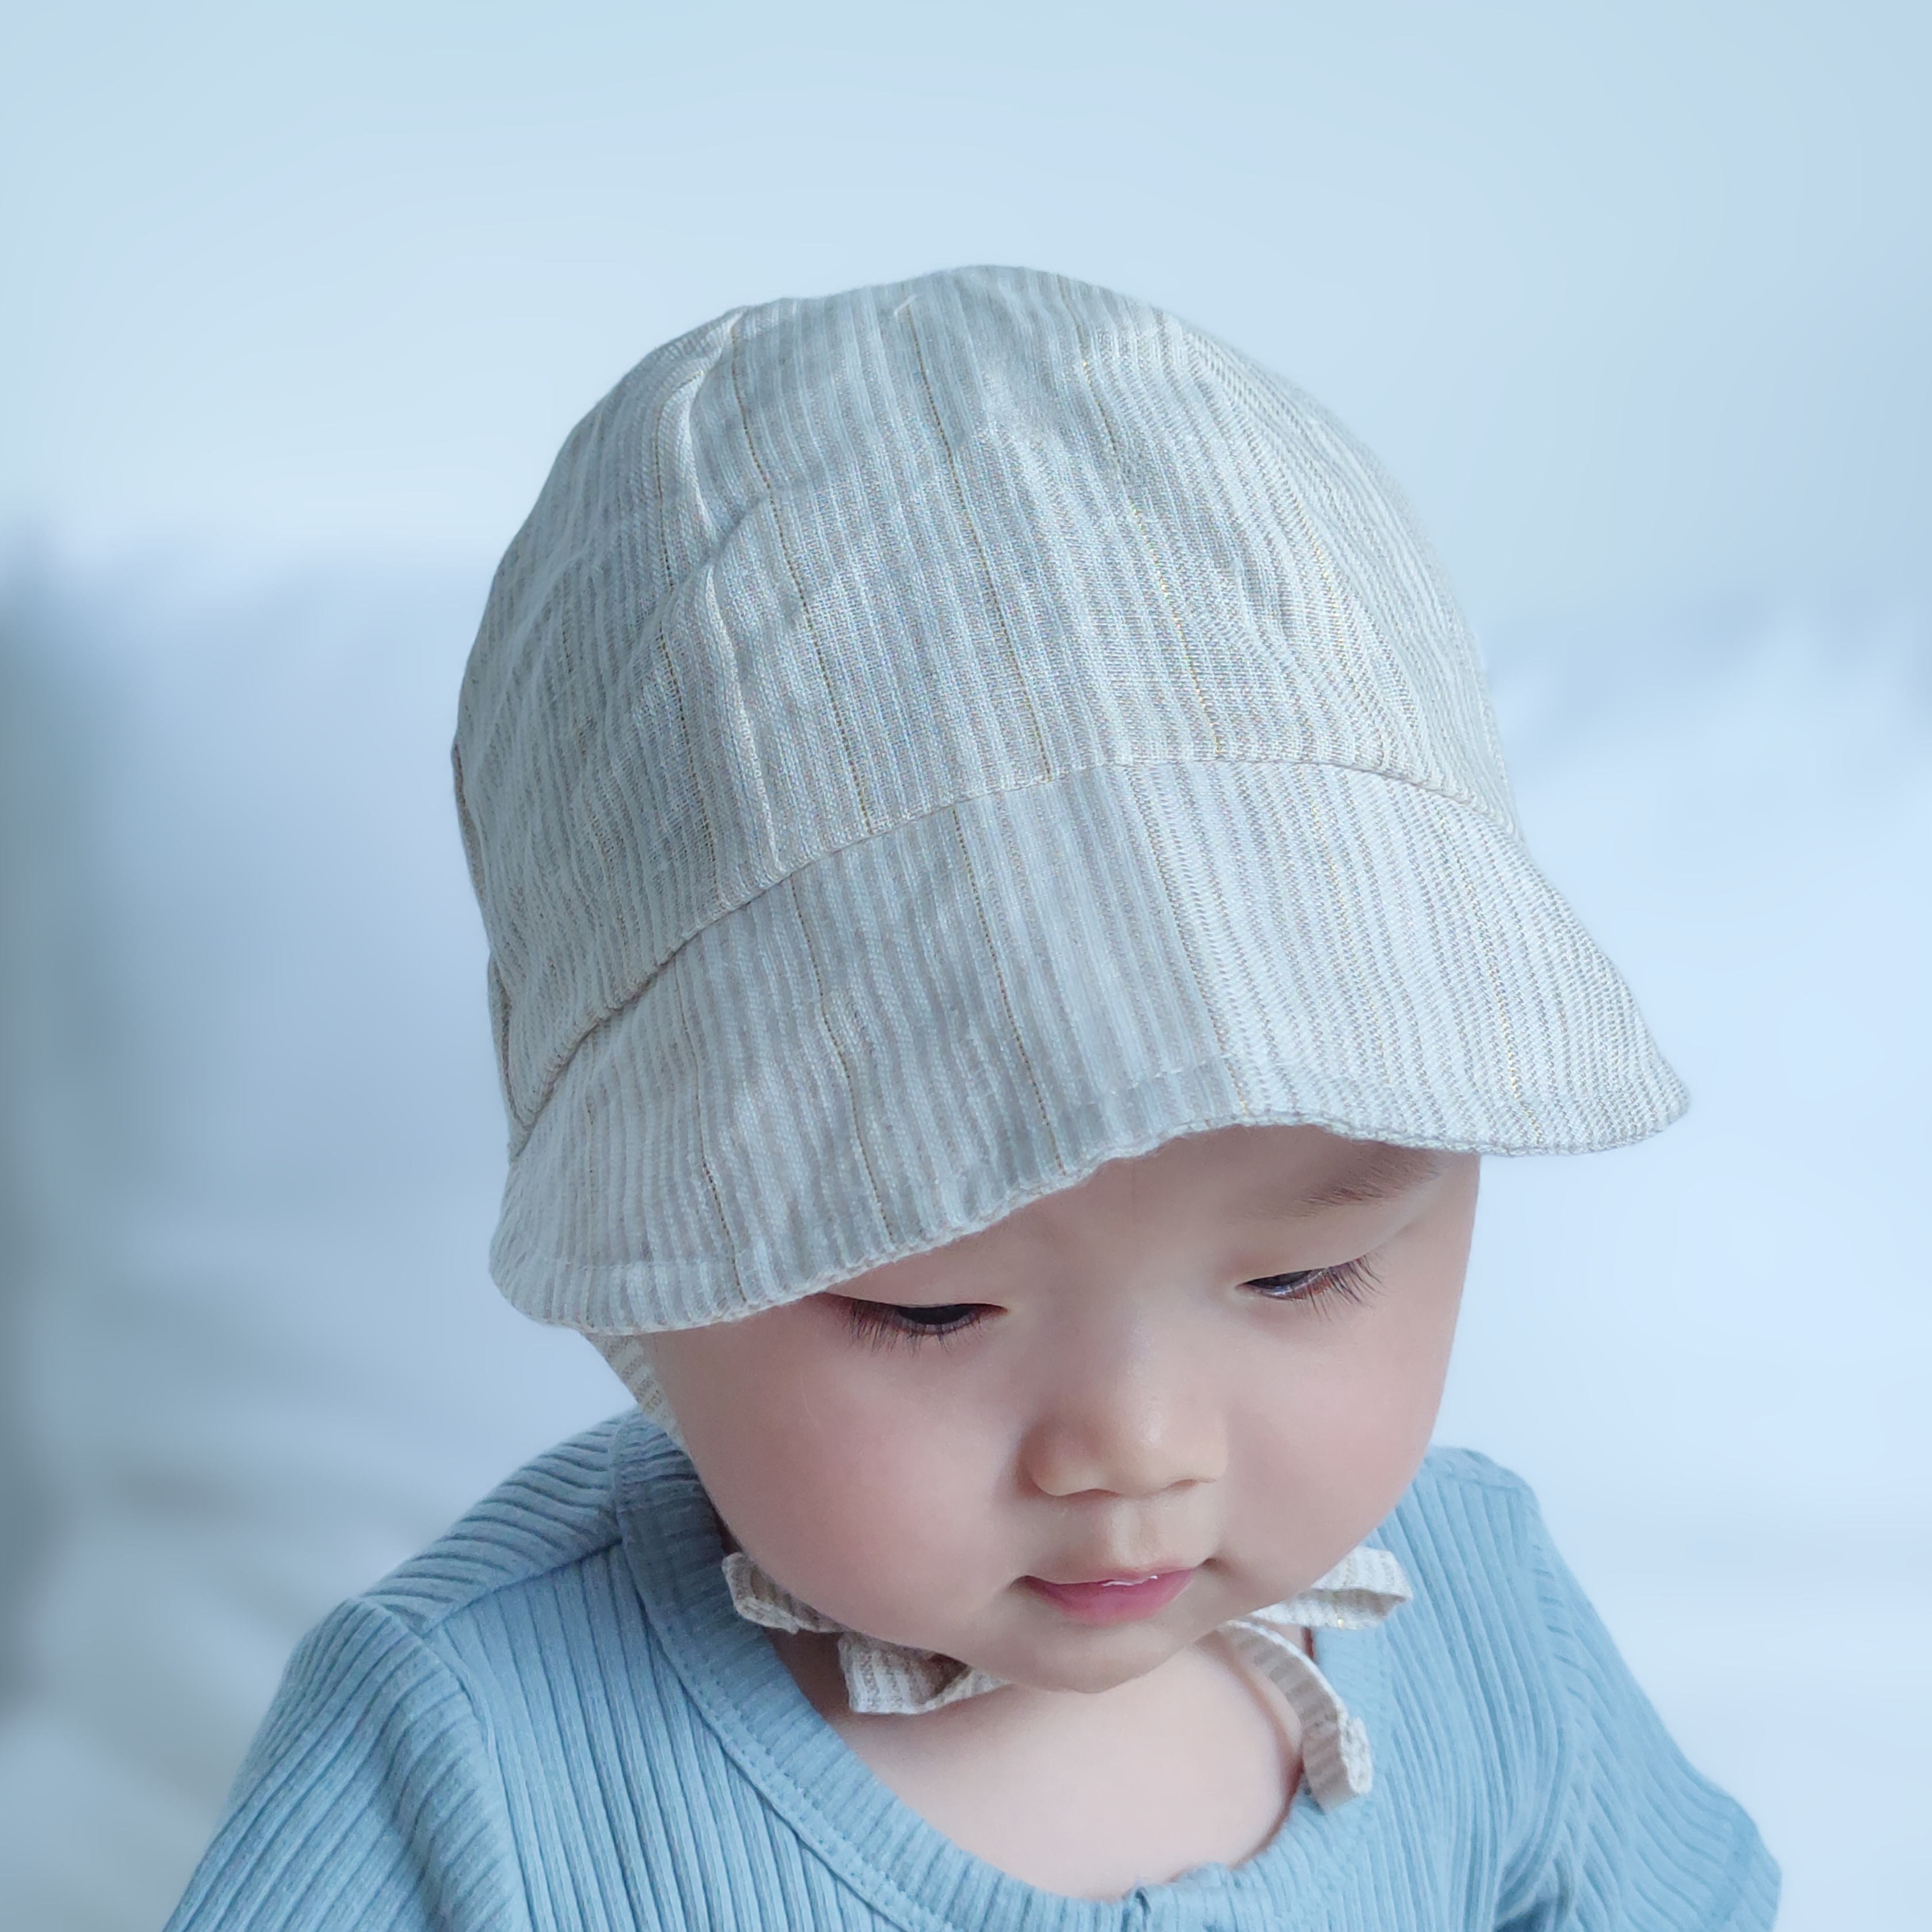 婴儿帽子儿童遮阳帽秋薄款防紫外线男新生儿宝宝方海太阳帽棒球帽